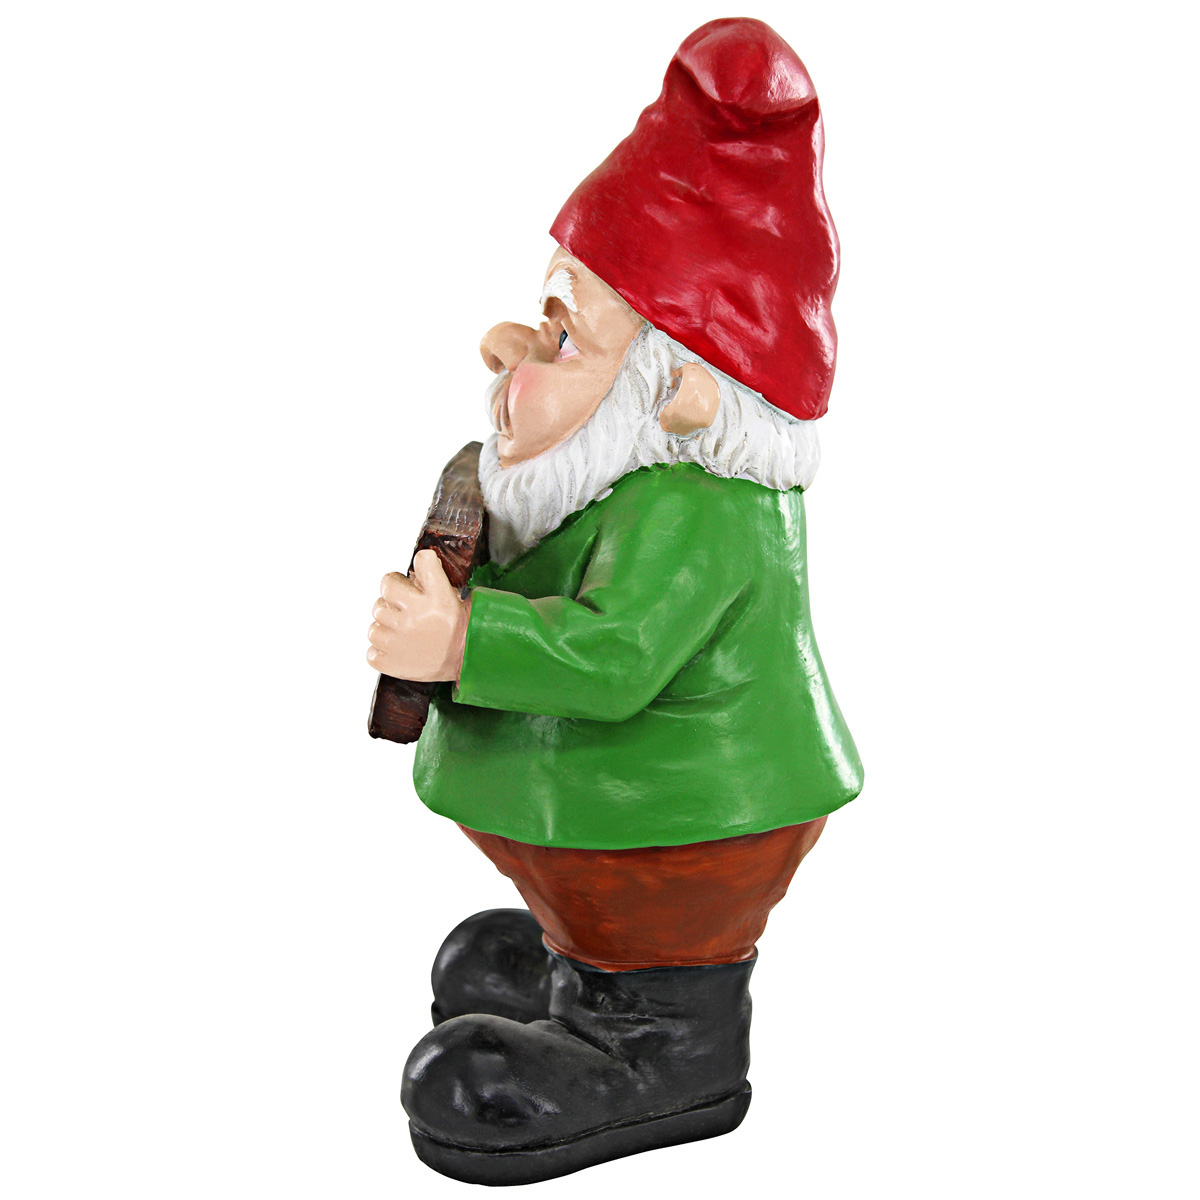 Picture 6 for Mr Bad Attitude "Go Away" Gnome Statue